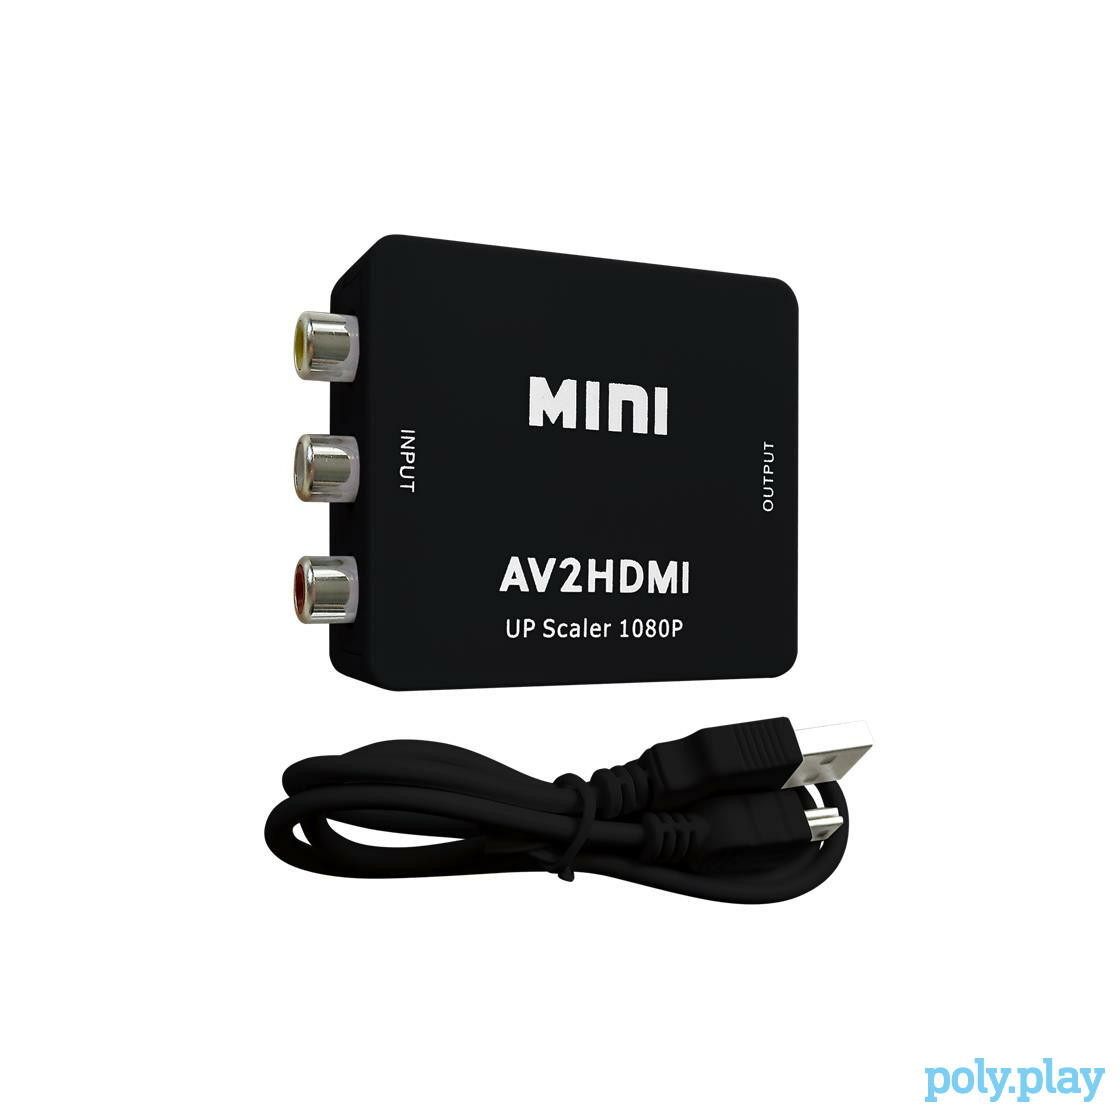 AV2HDMI Mini - AV Composite HDMI Converter (black)